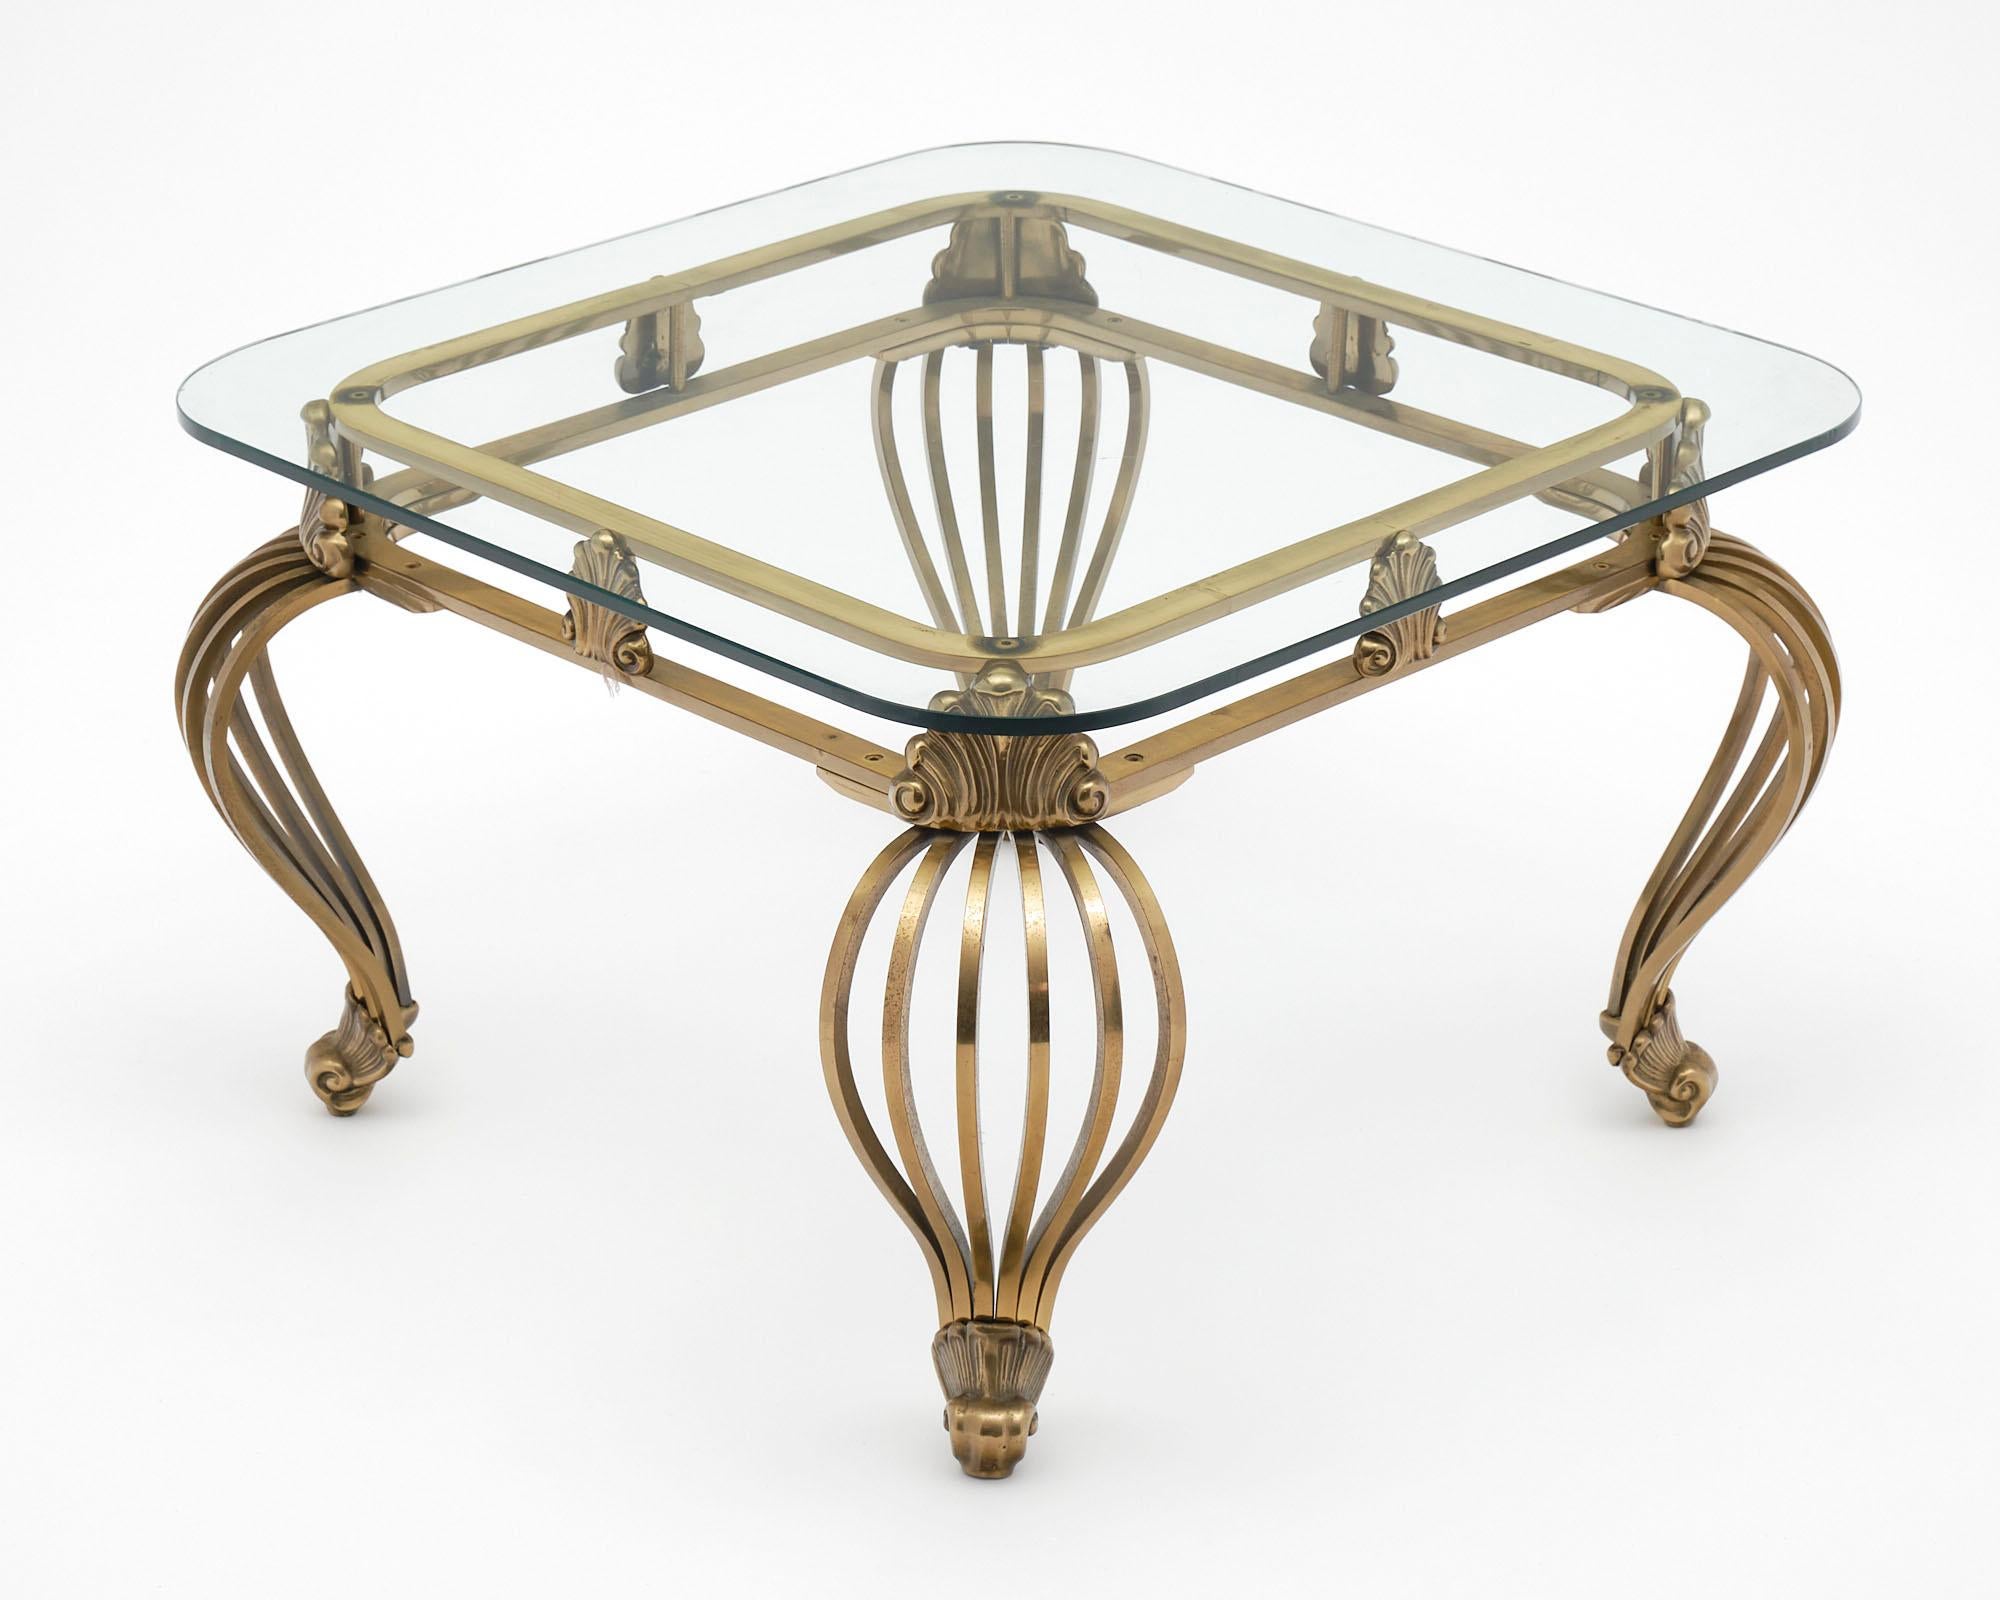 Table d'appoint en laiton massif de la période Art Déco italienne. Cette pièce exceptionnelle présente des pieds cabriole stylisés et des coquillages dans le tablier.